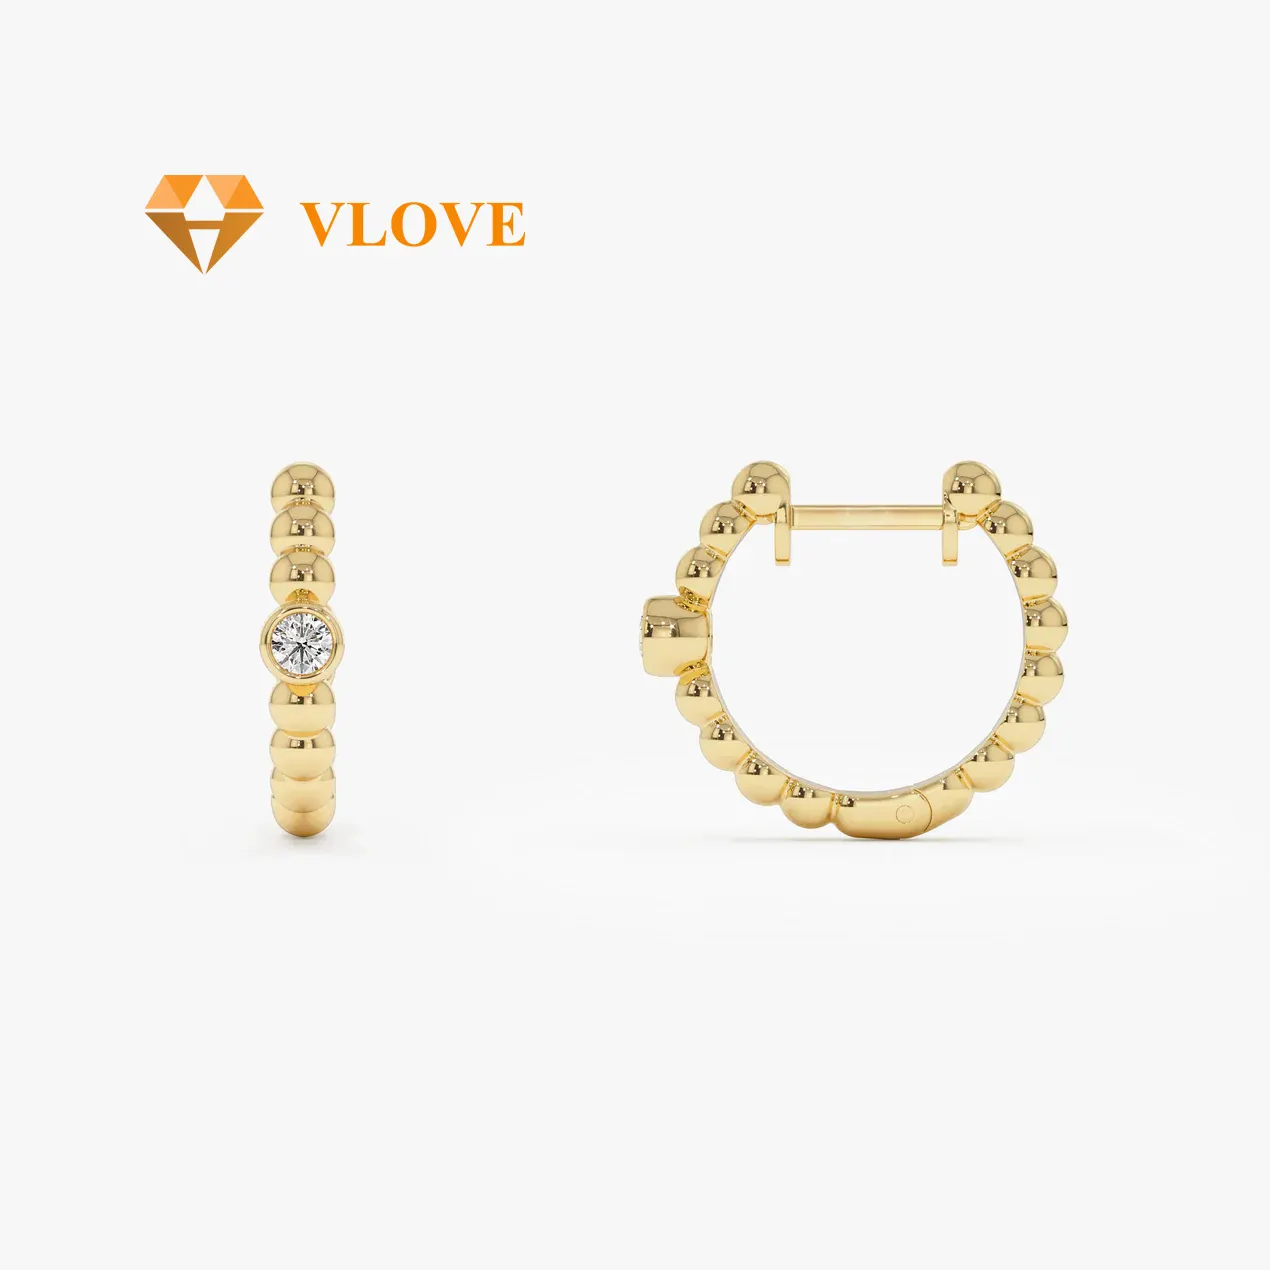 VLOVE perhiasan emas padat perhiasan pabrik kustom kelas atas pengaturan Bezel 14k Huggies berlian bermanik